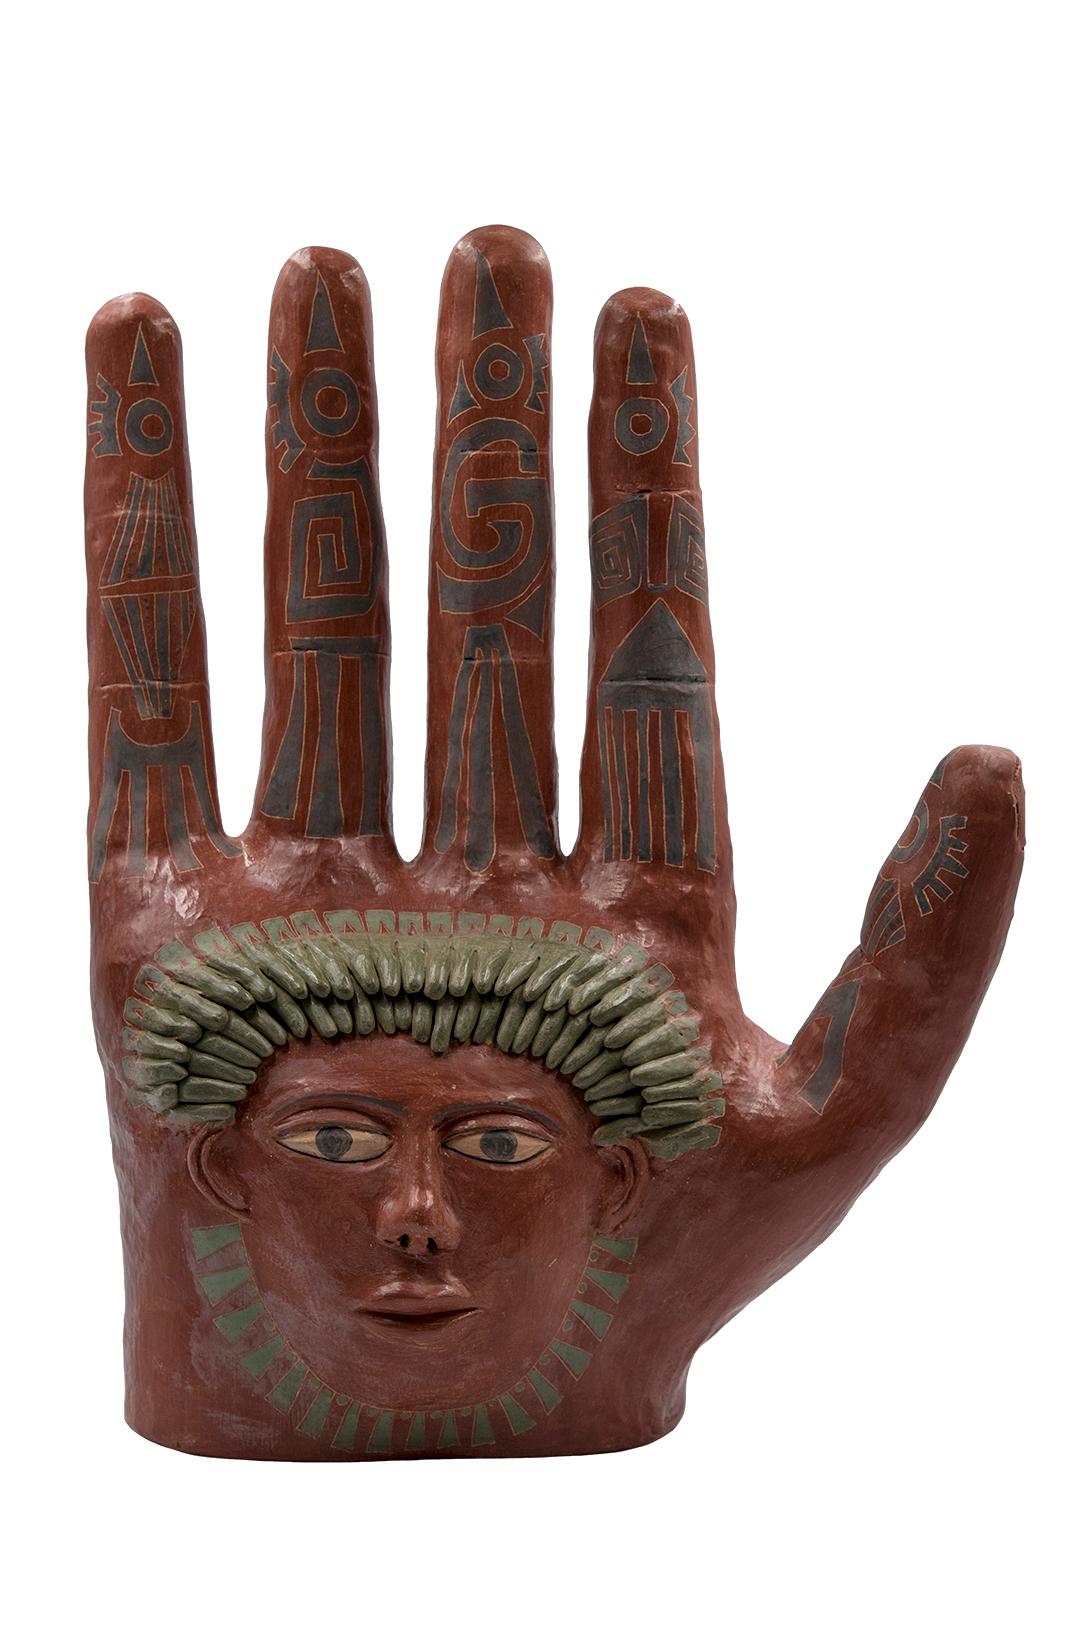 Cette sculpture manuelle en argile céramique rouge mexicaine est une œuvre de l'artiste Manuel Reyes. Fabriqué avec de l'argile de Oaxaca et de Zacatecas, peint avec des oxydes de la région. Réalisés selon la technique du modelage à la main et cuits